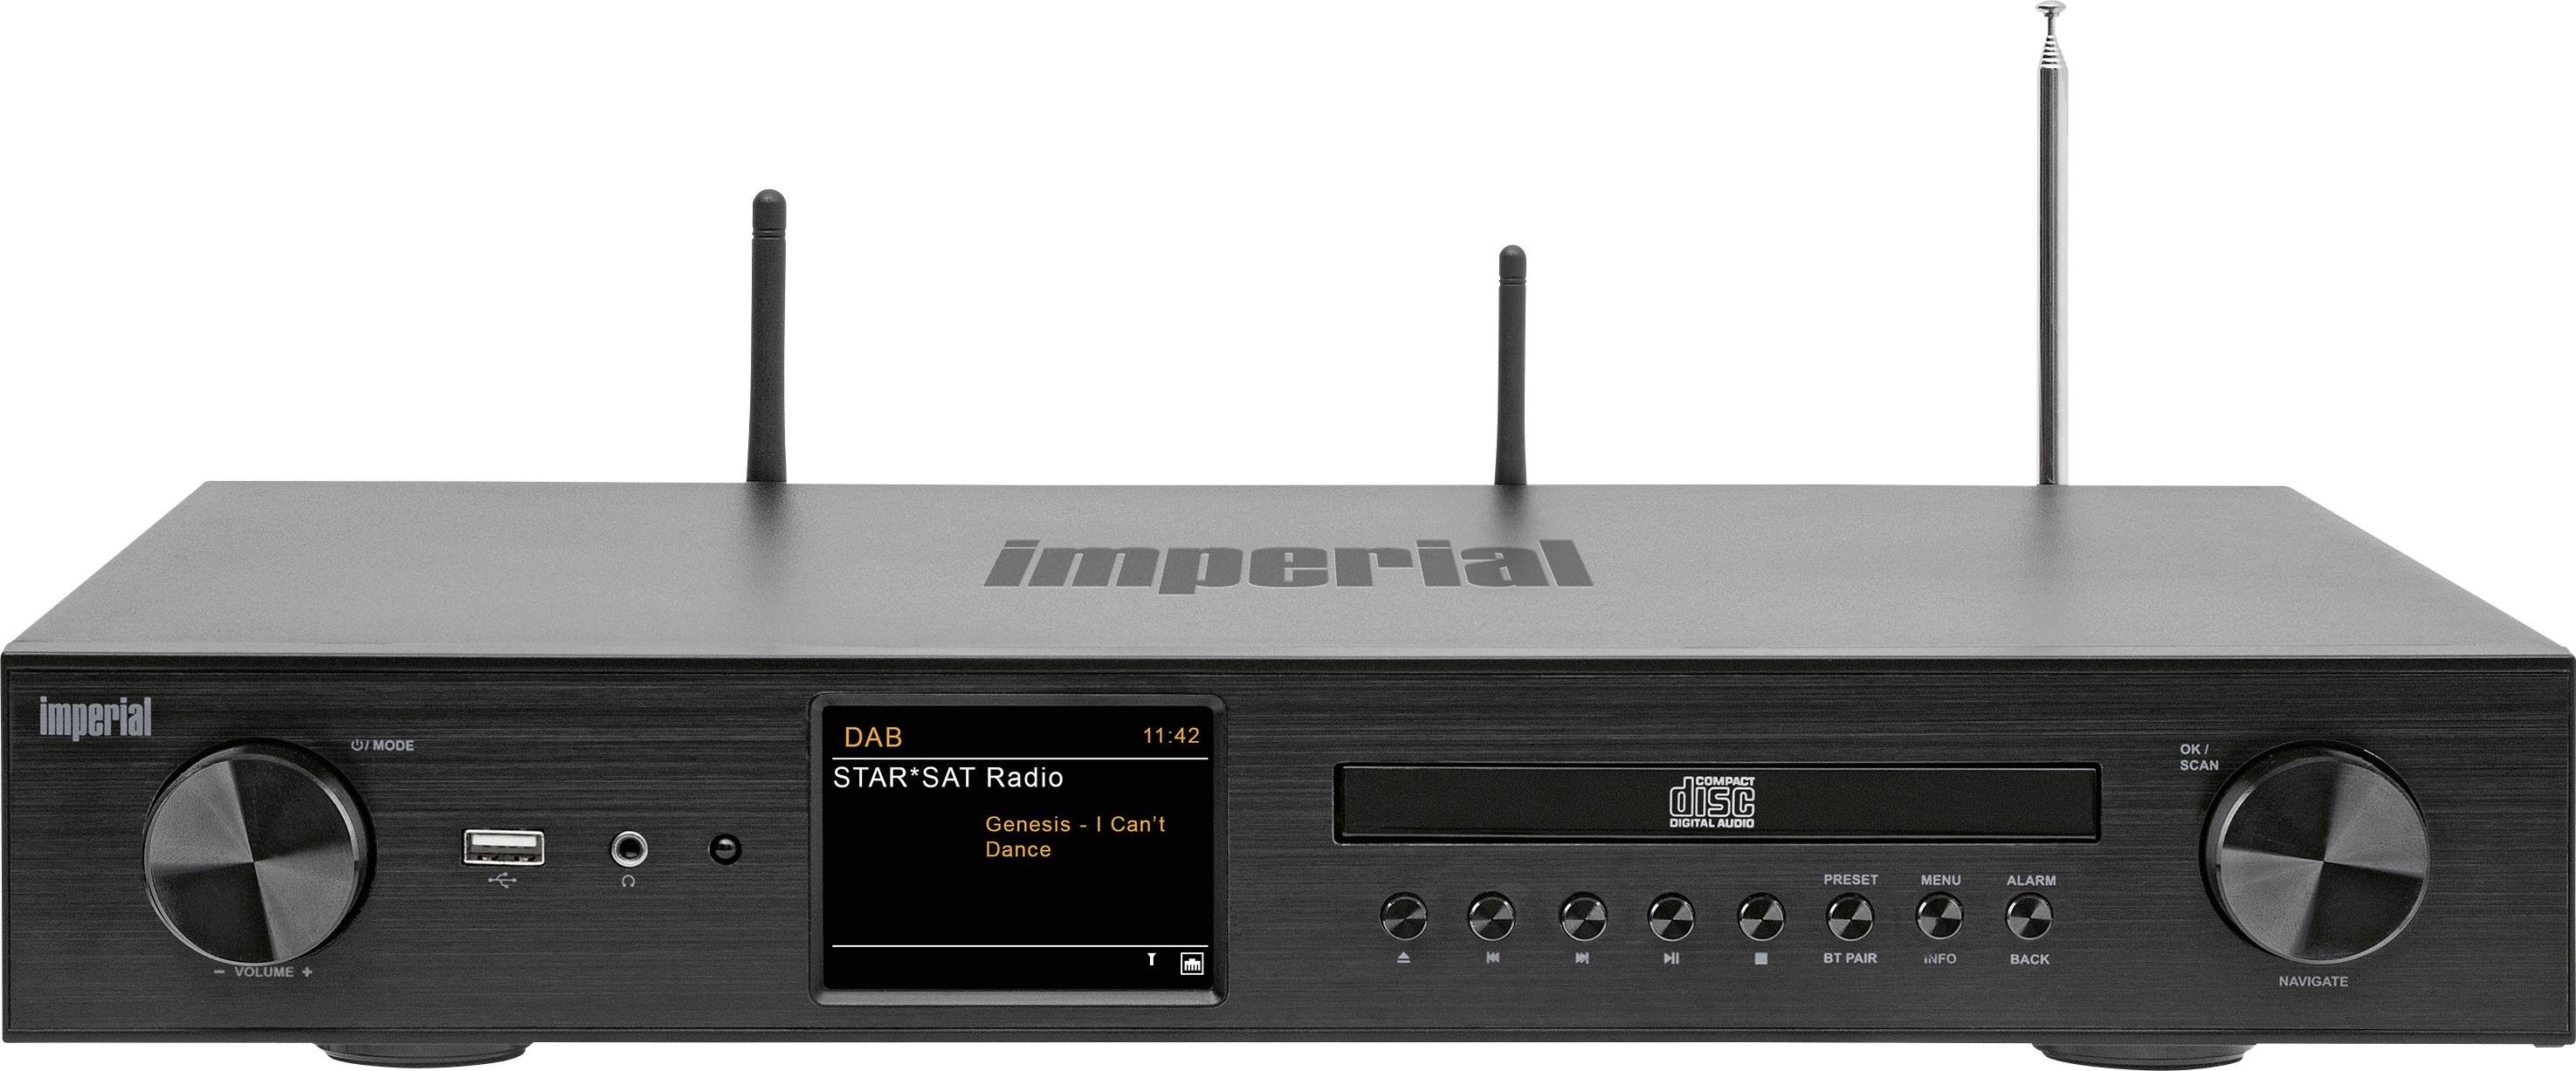 bedenken Een bezoek aan grootouders Binnenshuis Imperial DABMAN i550CD Netwerk stereo-receiver 2x42 W Zwart Bluetooth,  DAB+, Internetradio, USB, WiFi kopen ? Conrad Electronic